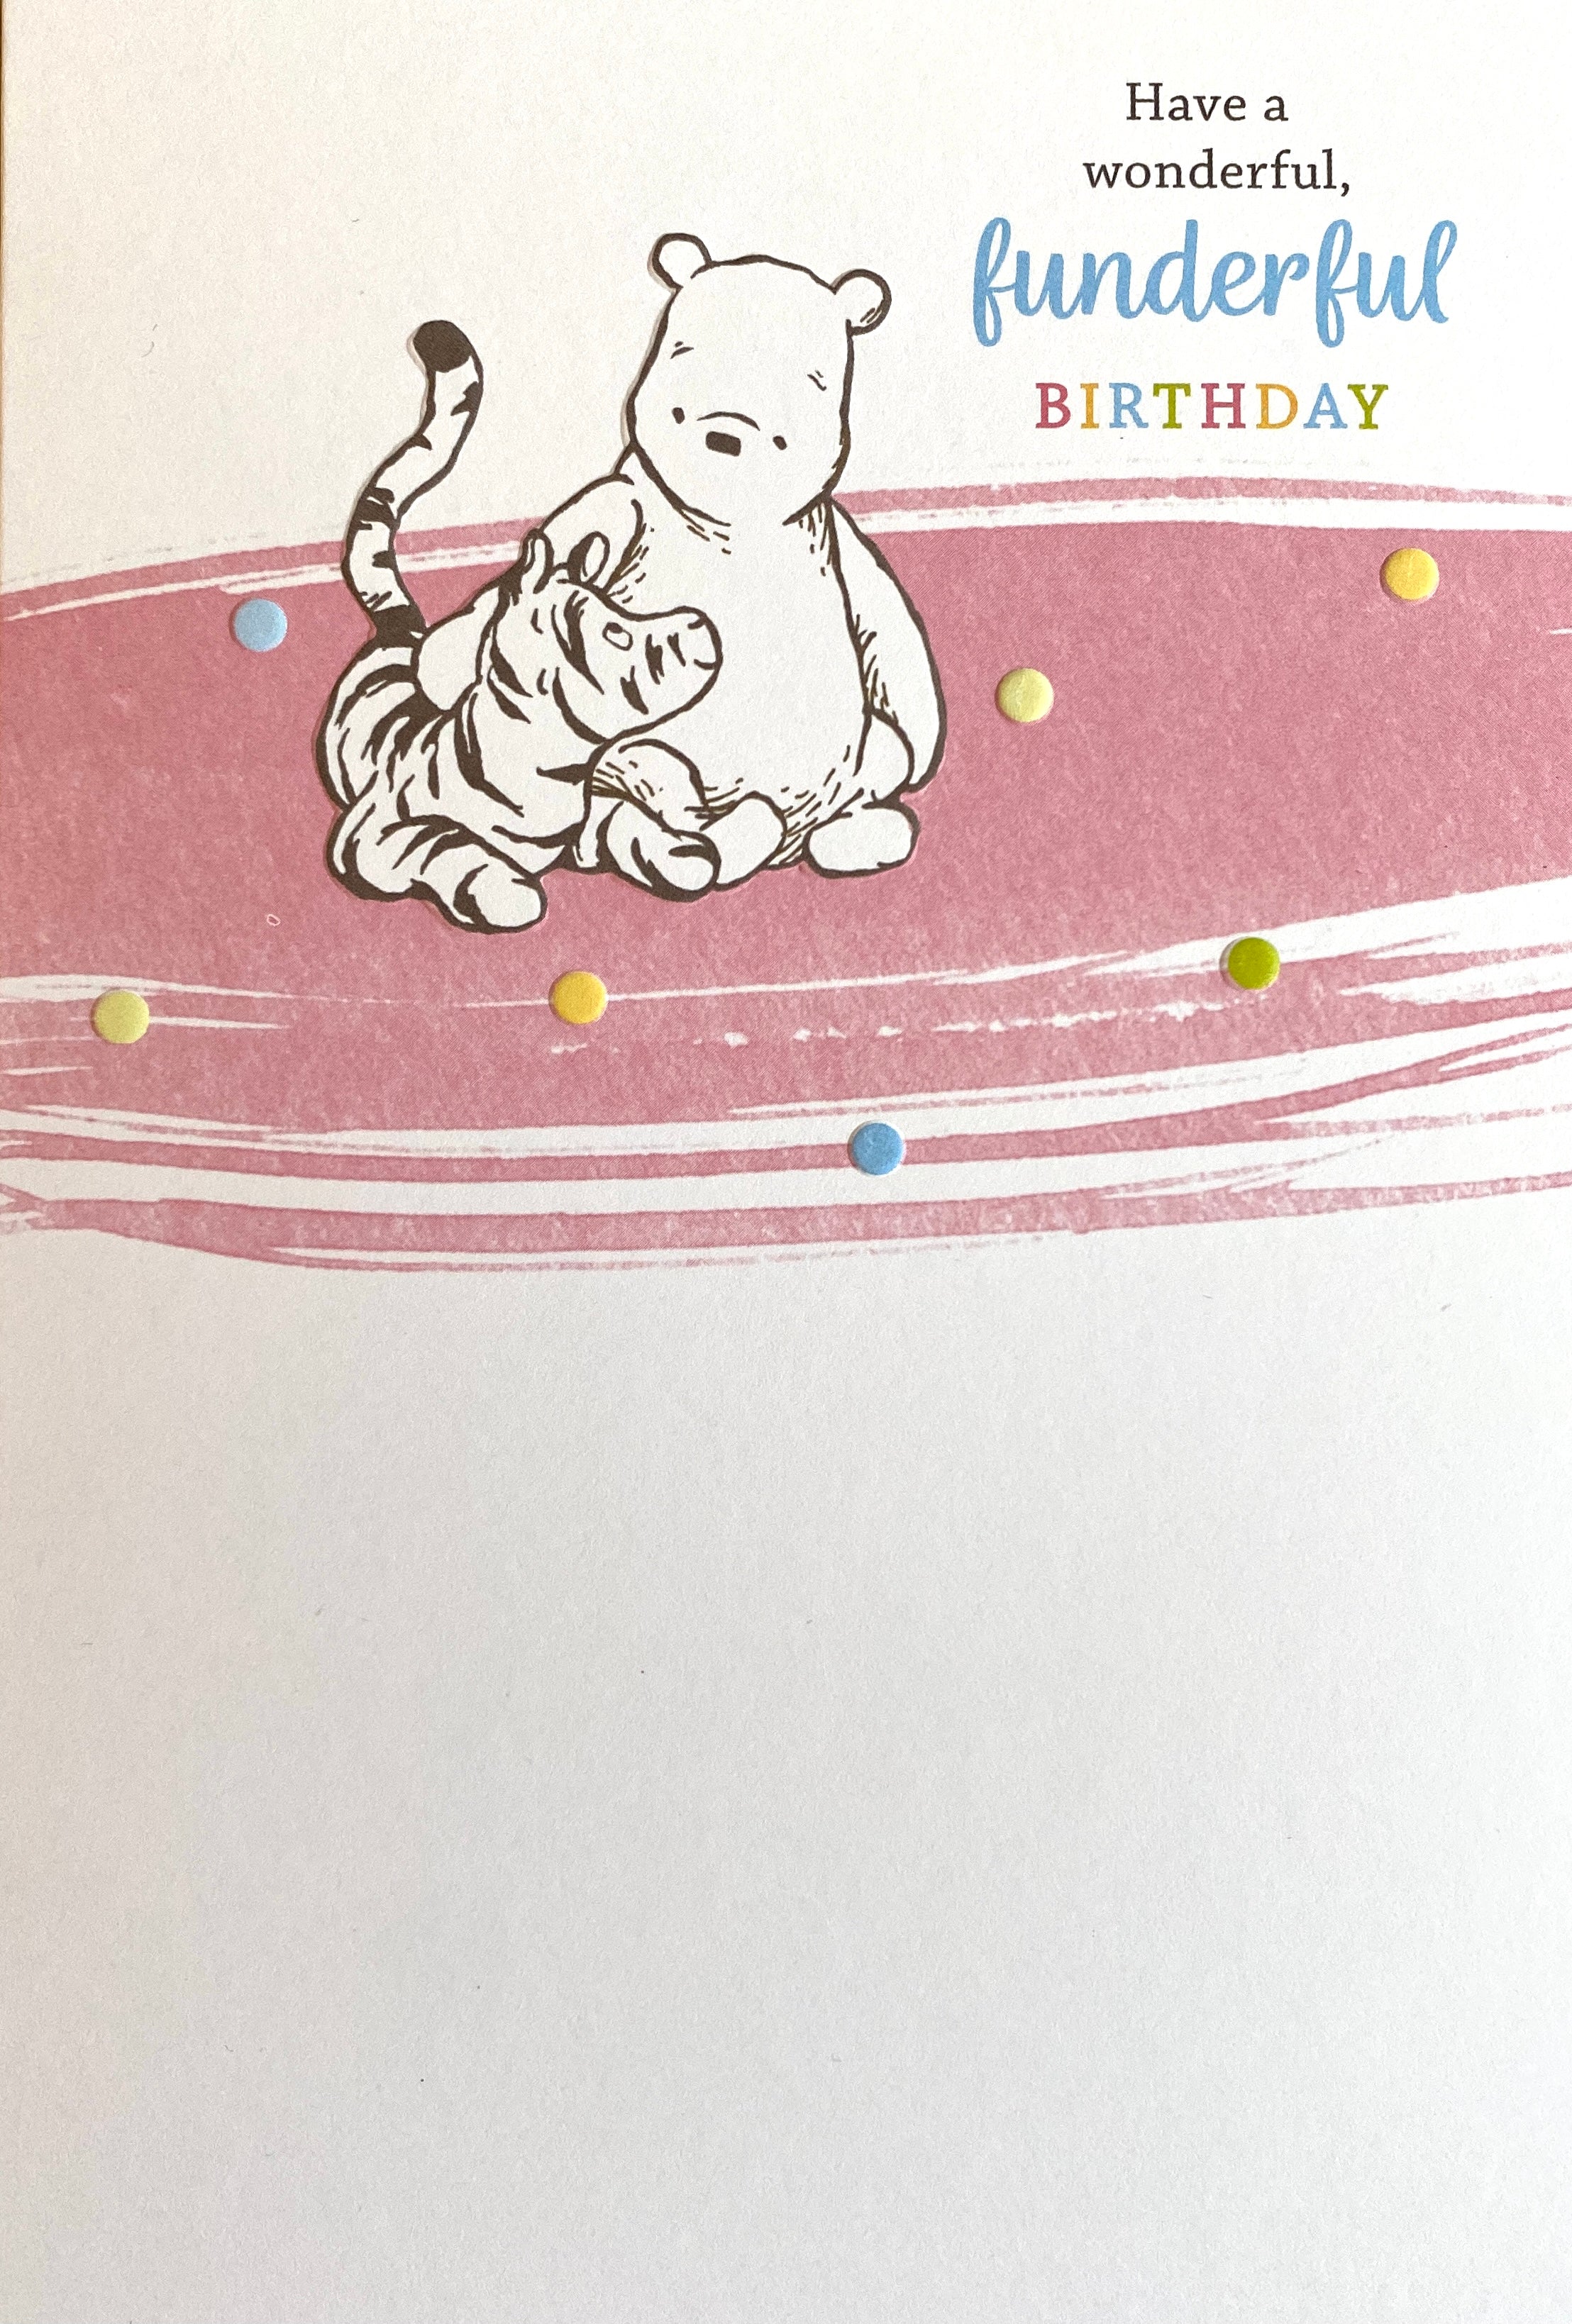 Funderful Birthday Card